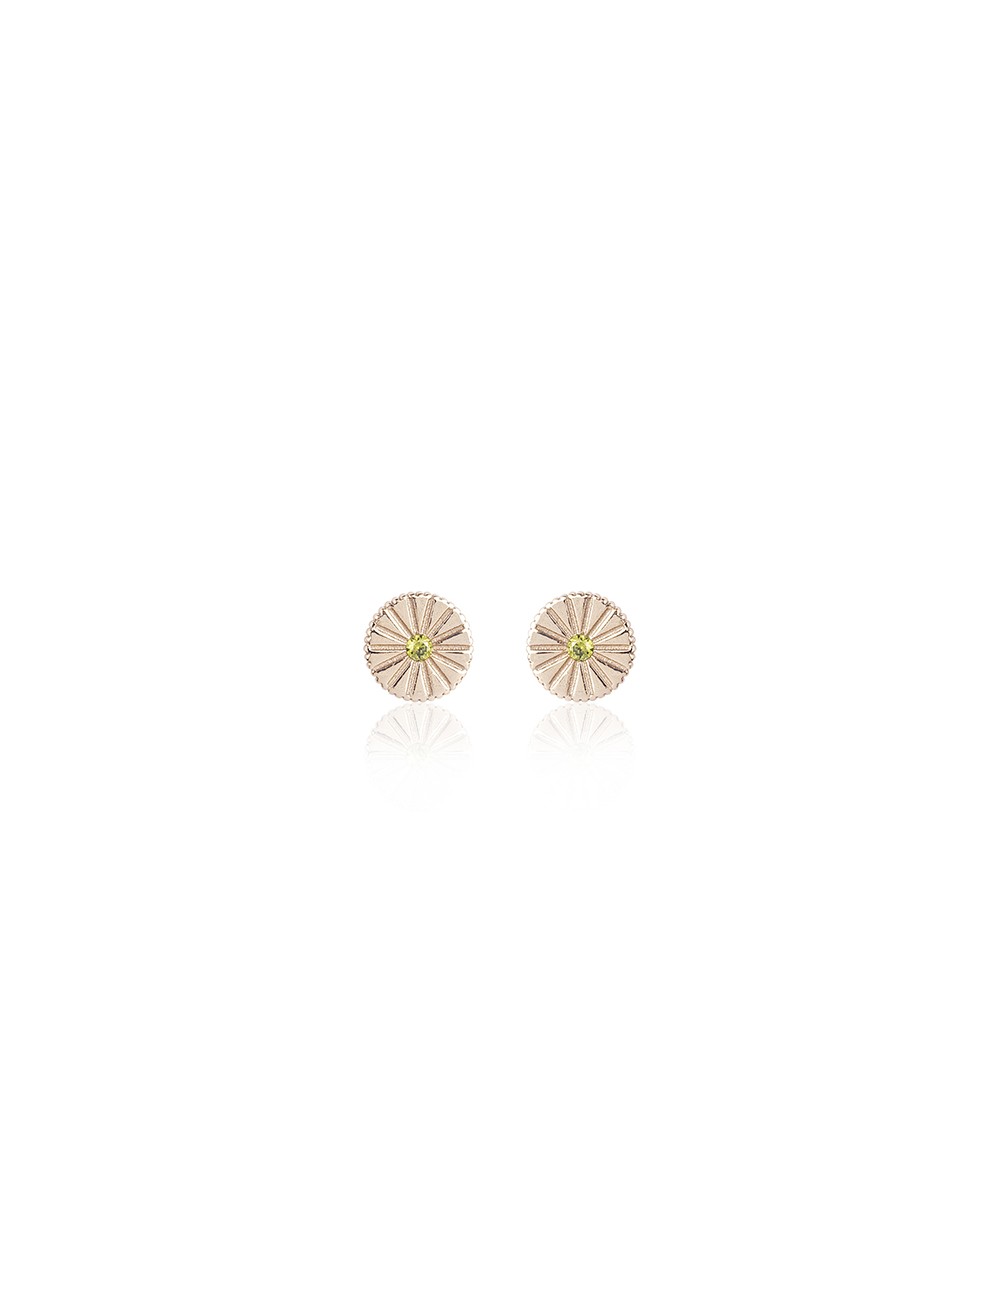 Sunfield -Pendientes Sunfield plata baño oro rosa y circonitas -PE062332/2/20